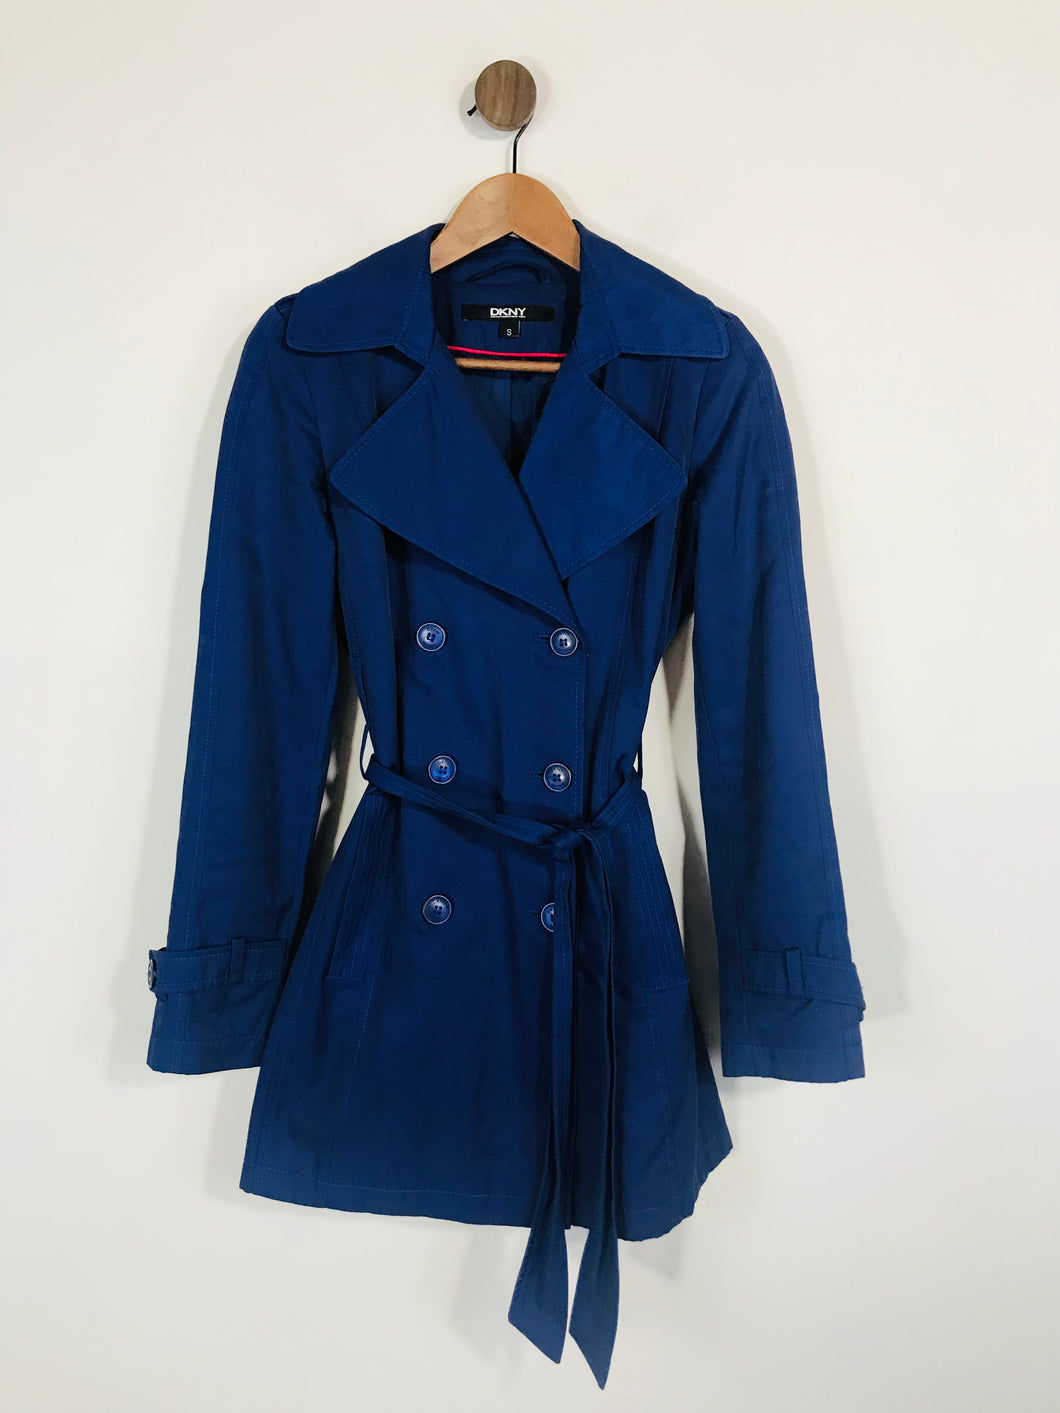 DKNY Women's Trench Coat | S UK8 | Blue